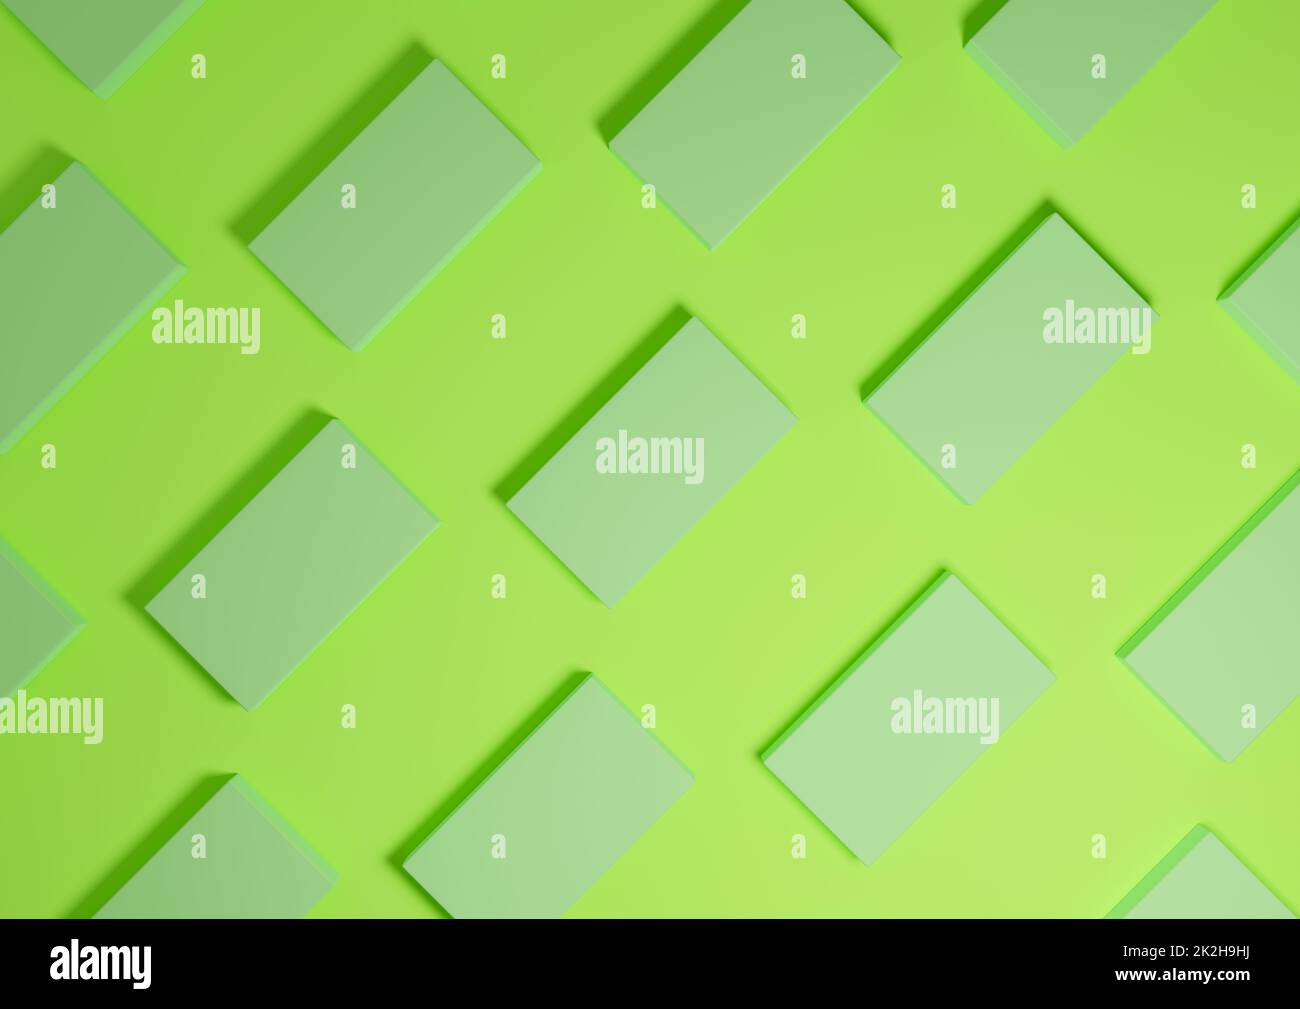 Luminoso, verde al neon, rendering 3D visualizzazione dall'alto minima, semplice e moderna del prodotto a giacitura piatta da sopra lo sfondo con supporti quadrati ripetitivi in un motivo Foto Stock